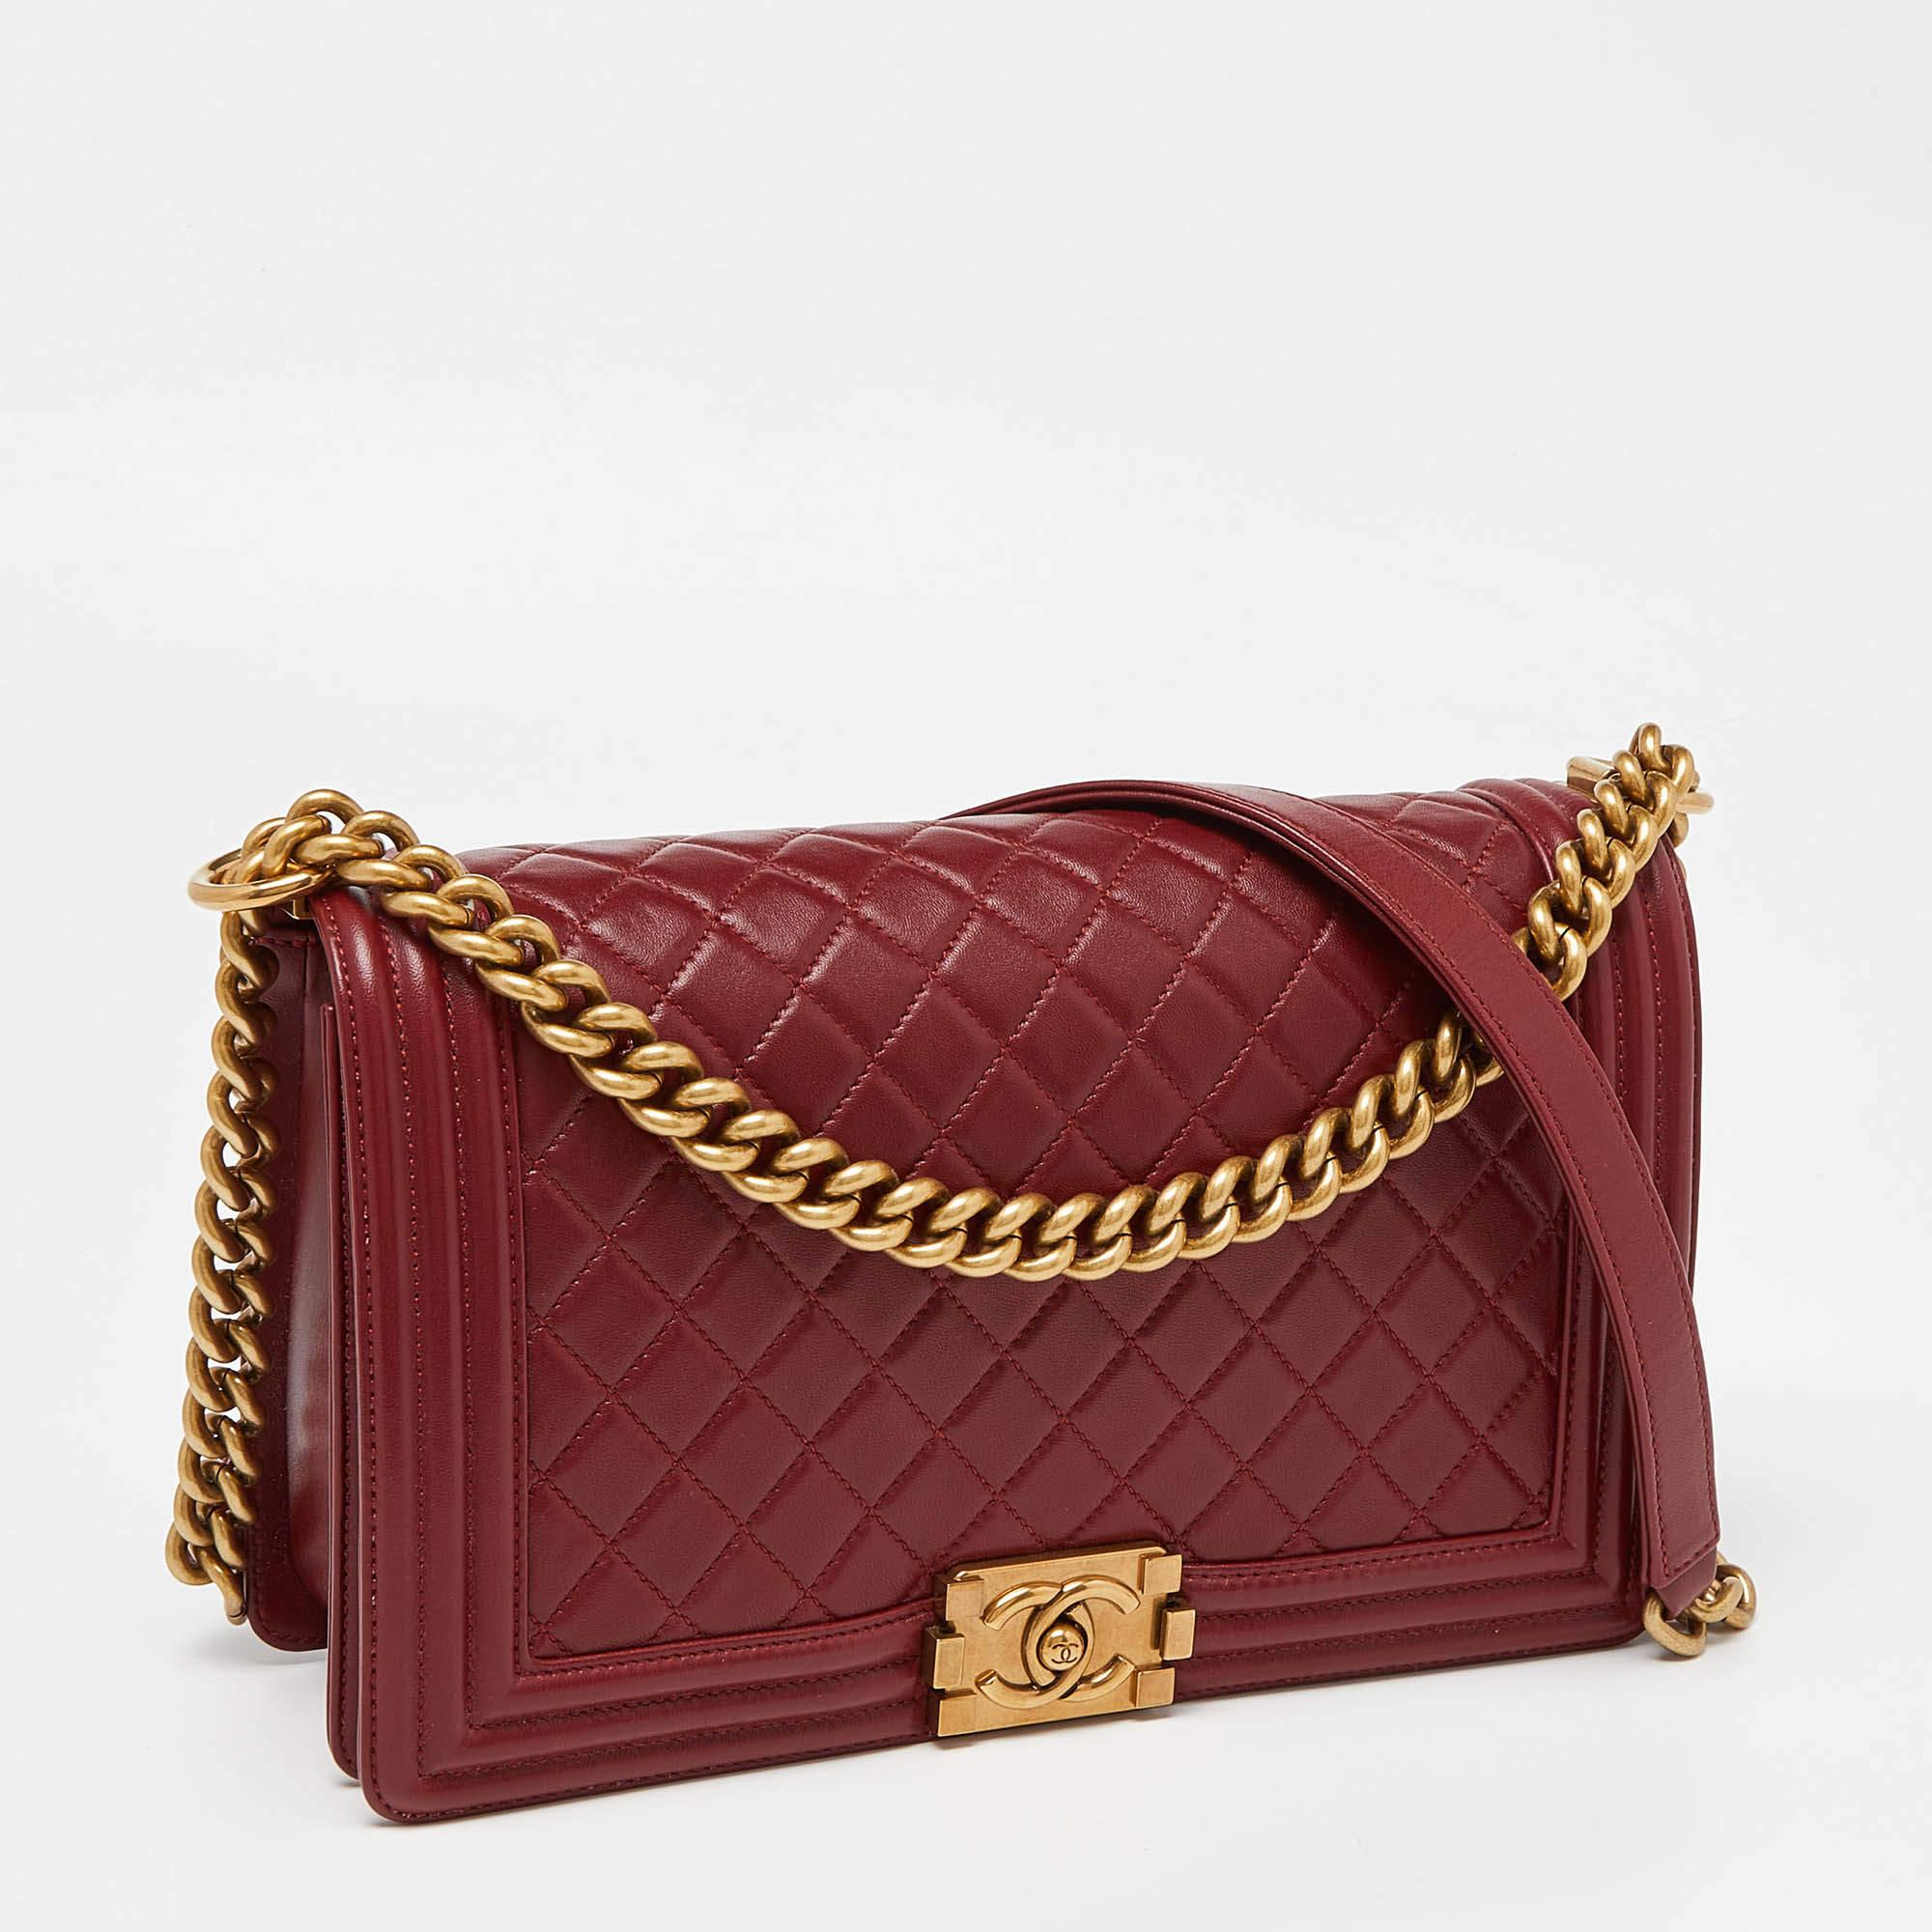 Diese stilvolle Boy Flap Bag von Chanel ist aus rotem Leder gefertigt. Sie lässt sich öffnen und bietet einen geräumigen Innenraum, in dem die wichtigsten Dinge des Alltags Platz finden. Die Tasche ist mit goldfarbenen Beschlägen versehen.

